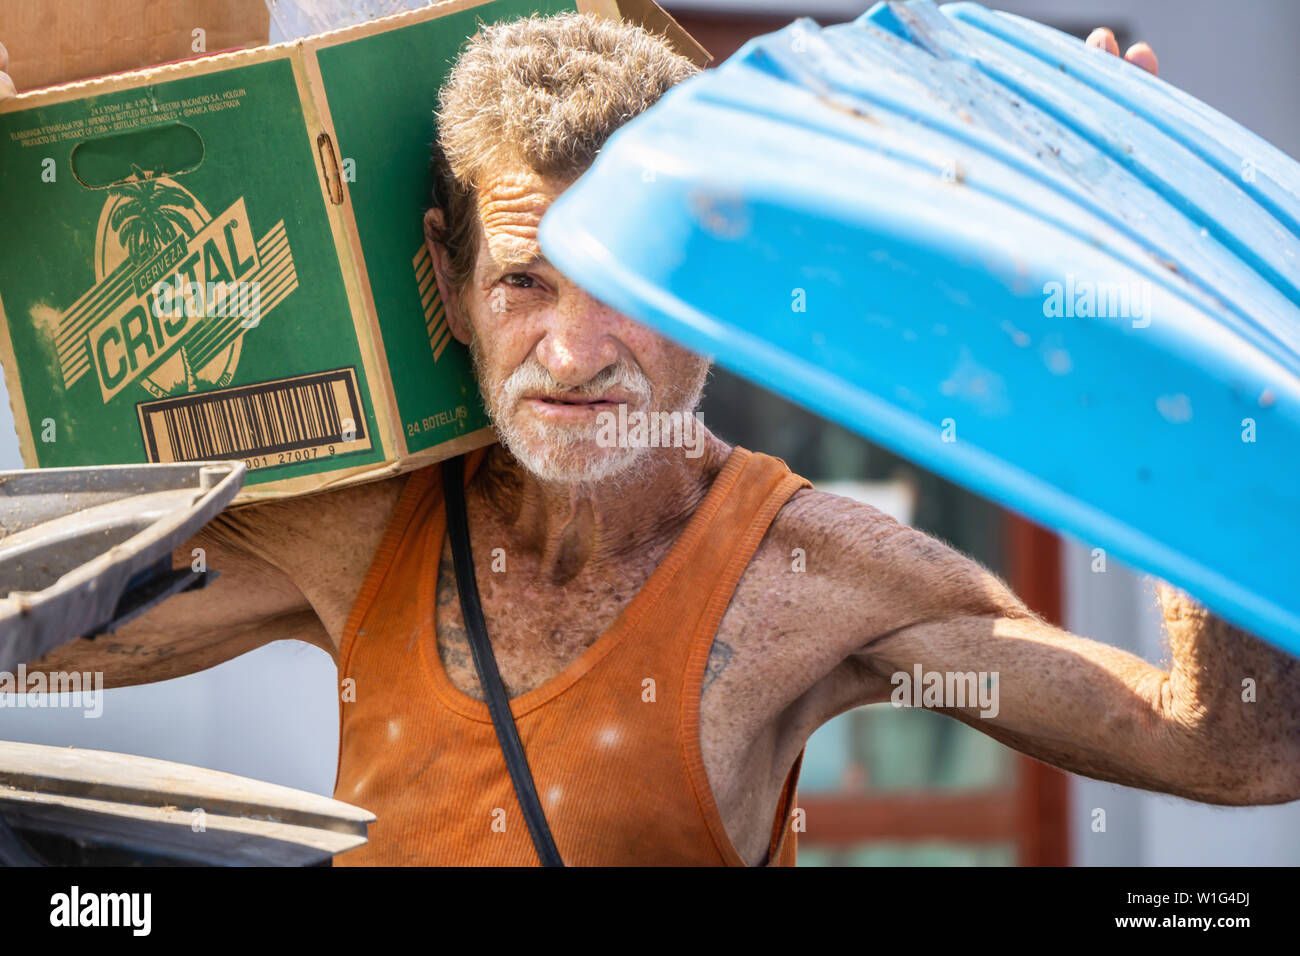 L'Avana, Cuba - Maggio 17, 2019: vecchi e sporchi senzatetto cubano uomo sta cercando nel bidone della spazzatura per le strade della vecchia Havana City durante una calda giornata di sole. Foto Stock